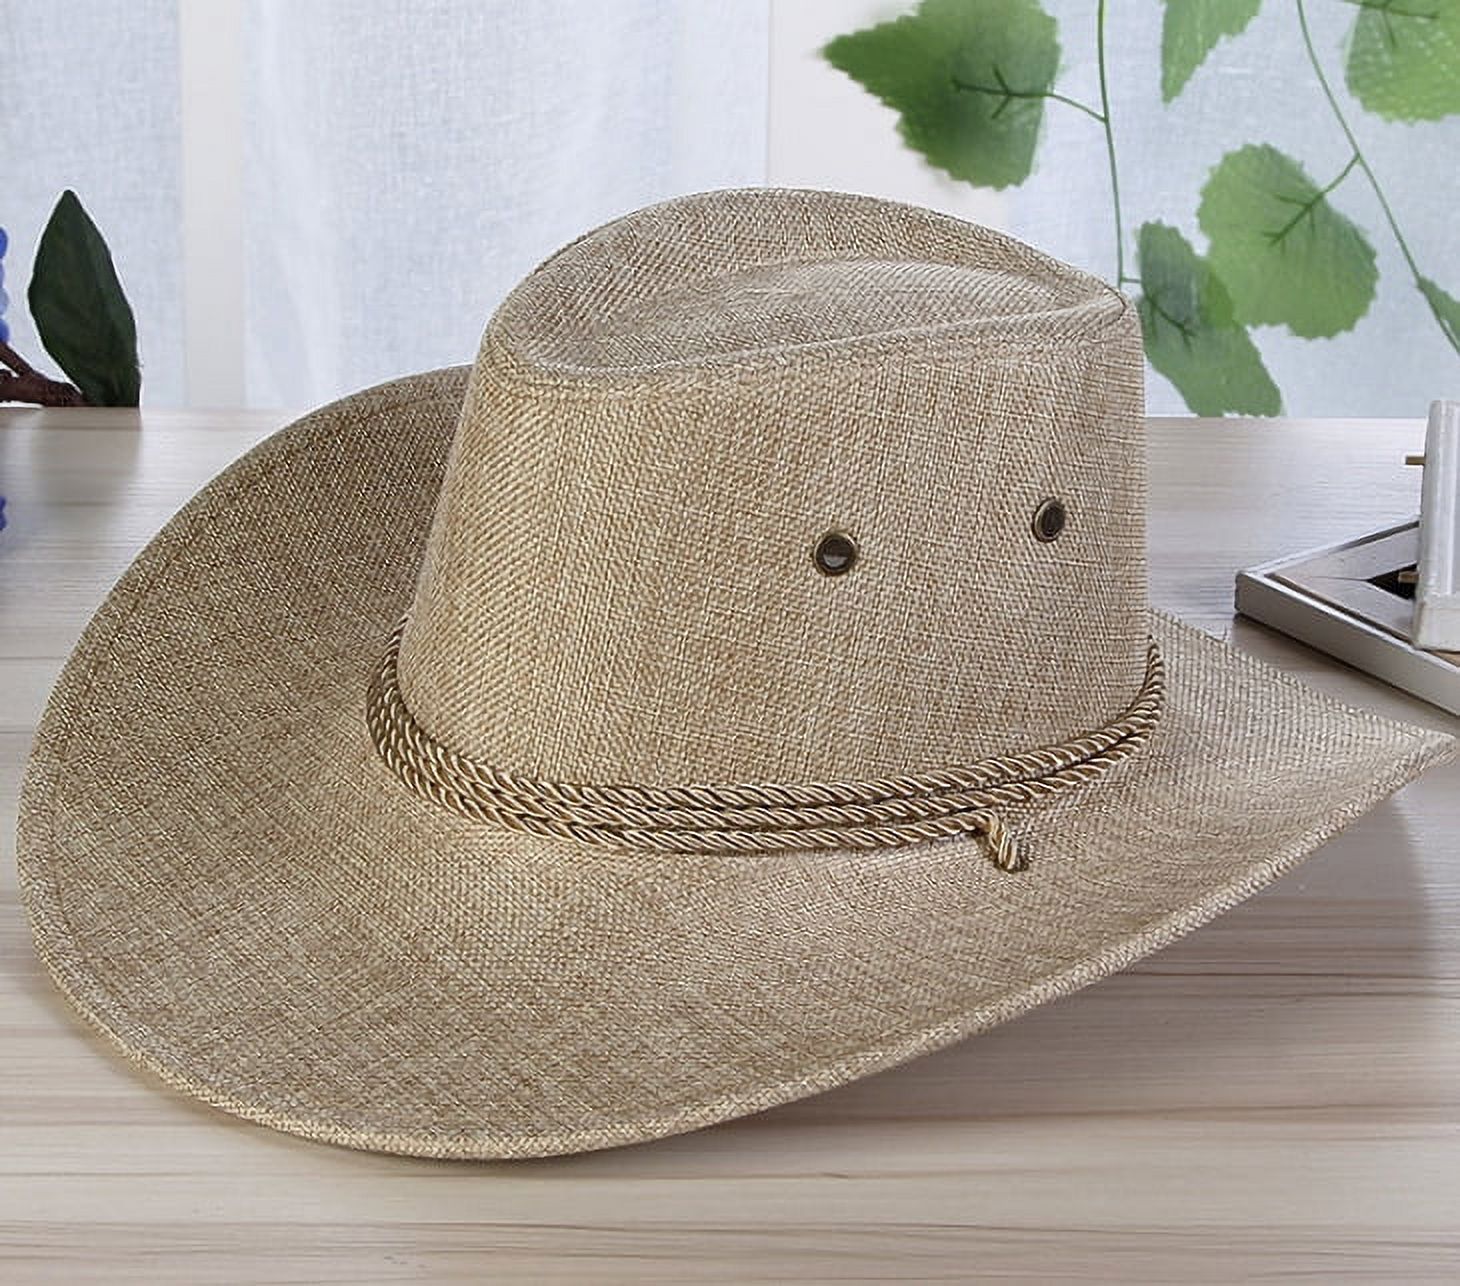 Sun Hat, Men Summer Straw Hat, Cool Western Cowboy Hat, Outdoor Wide Brim Hat - image 1 of 8